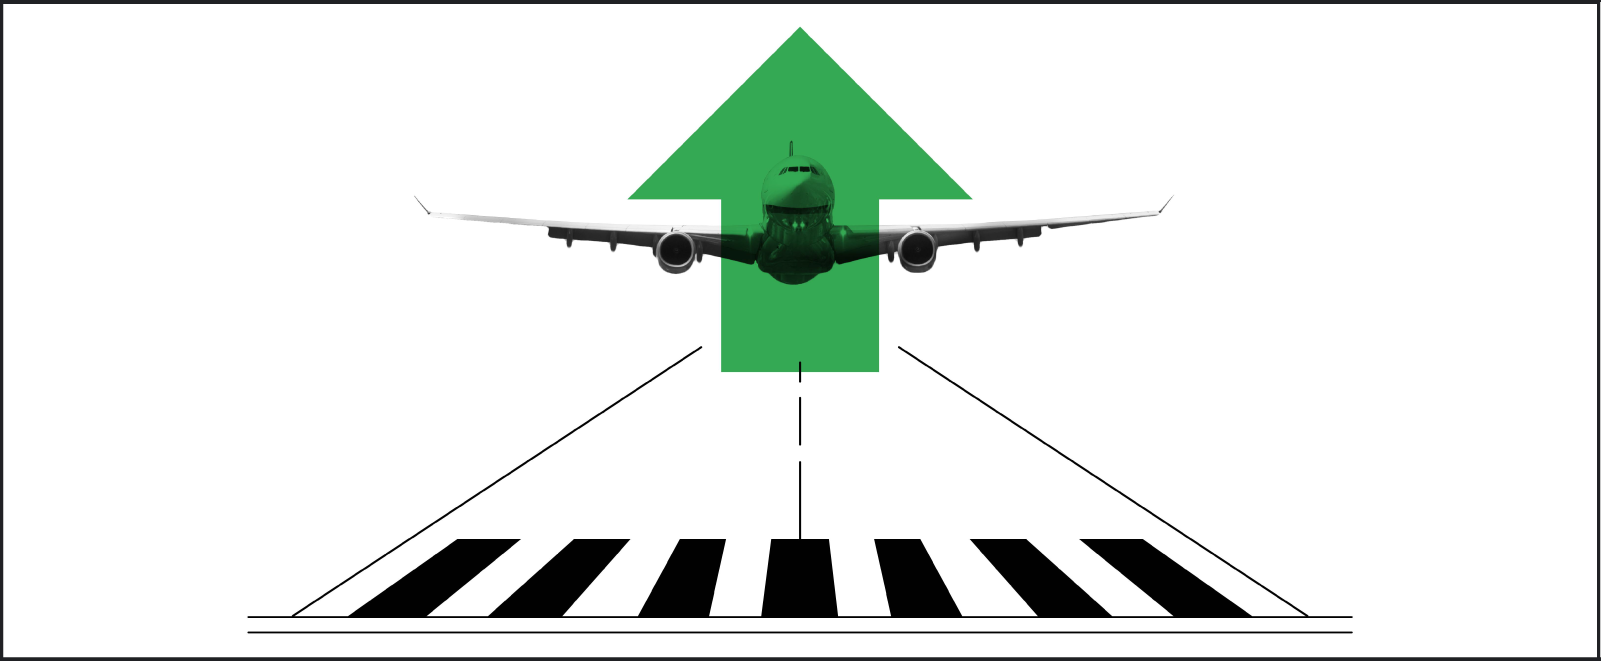 Pistten havalanmakta olan siyah-beyaz bir uçak illüstrasyonu üzerine yerleştirilmiş çarpıcı yeşil renkte bir ok.